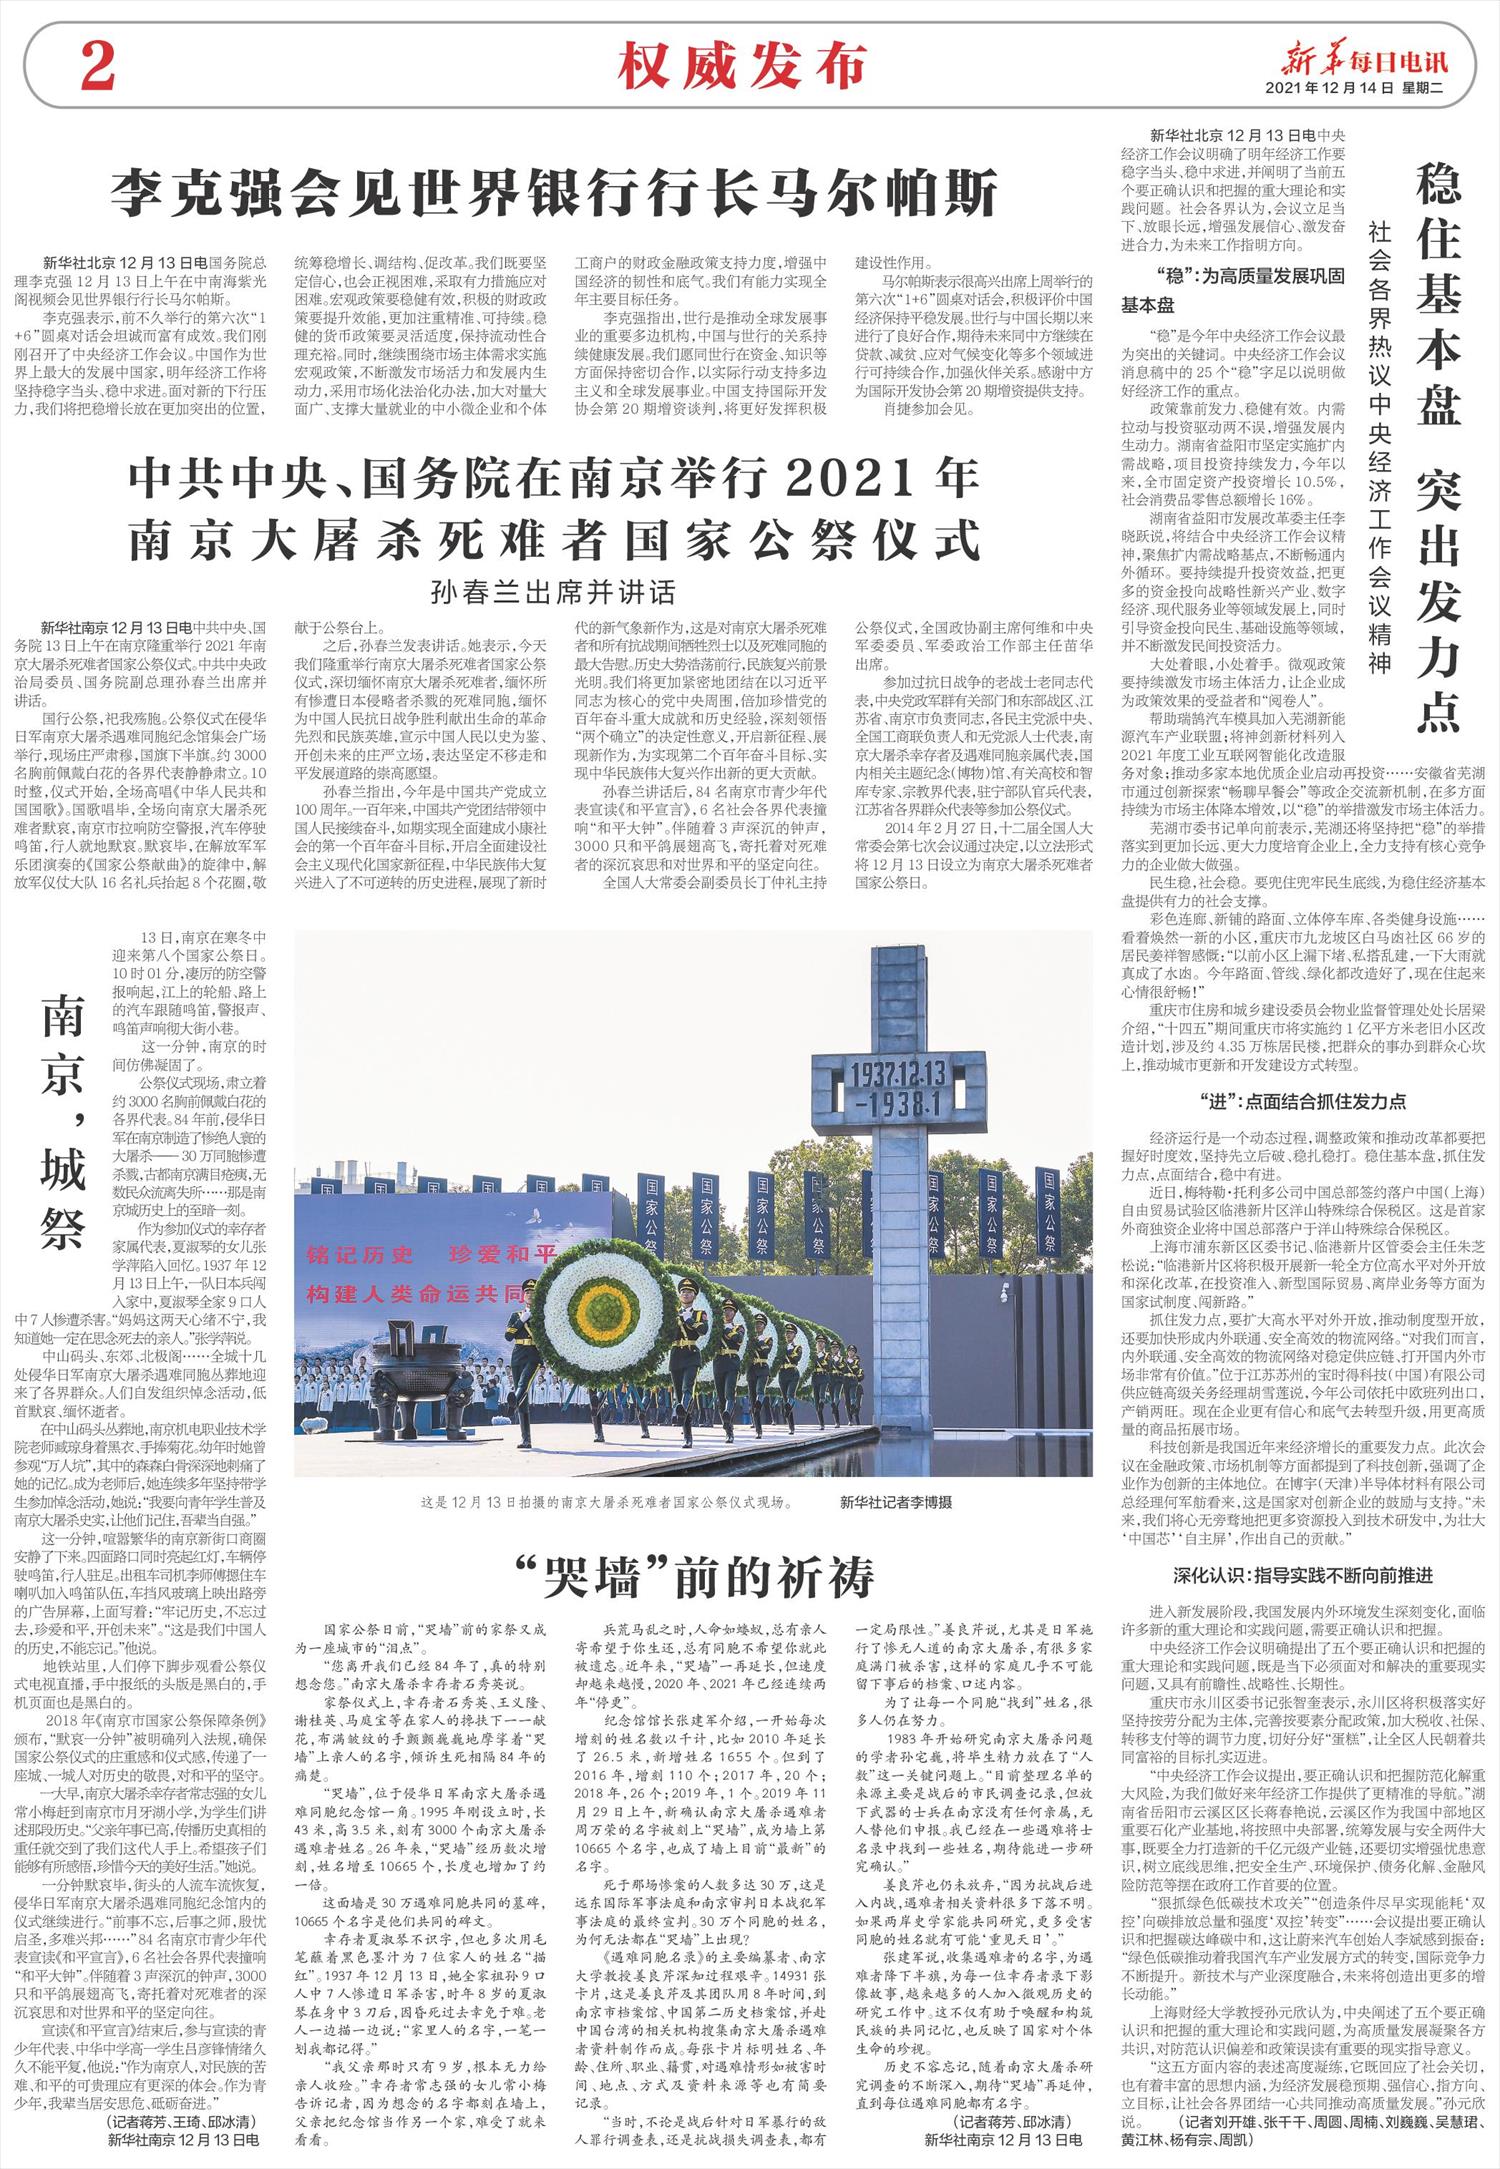 新华每日电讯-微报纸-2021年12月14日